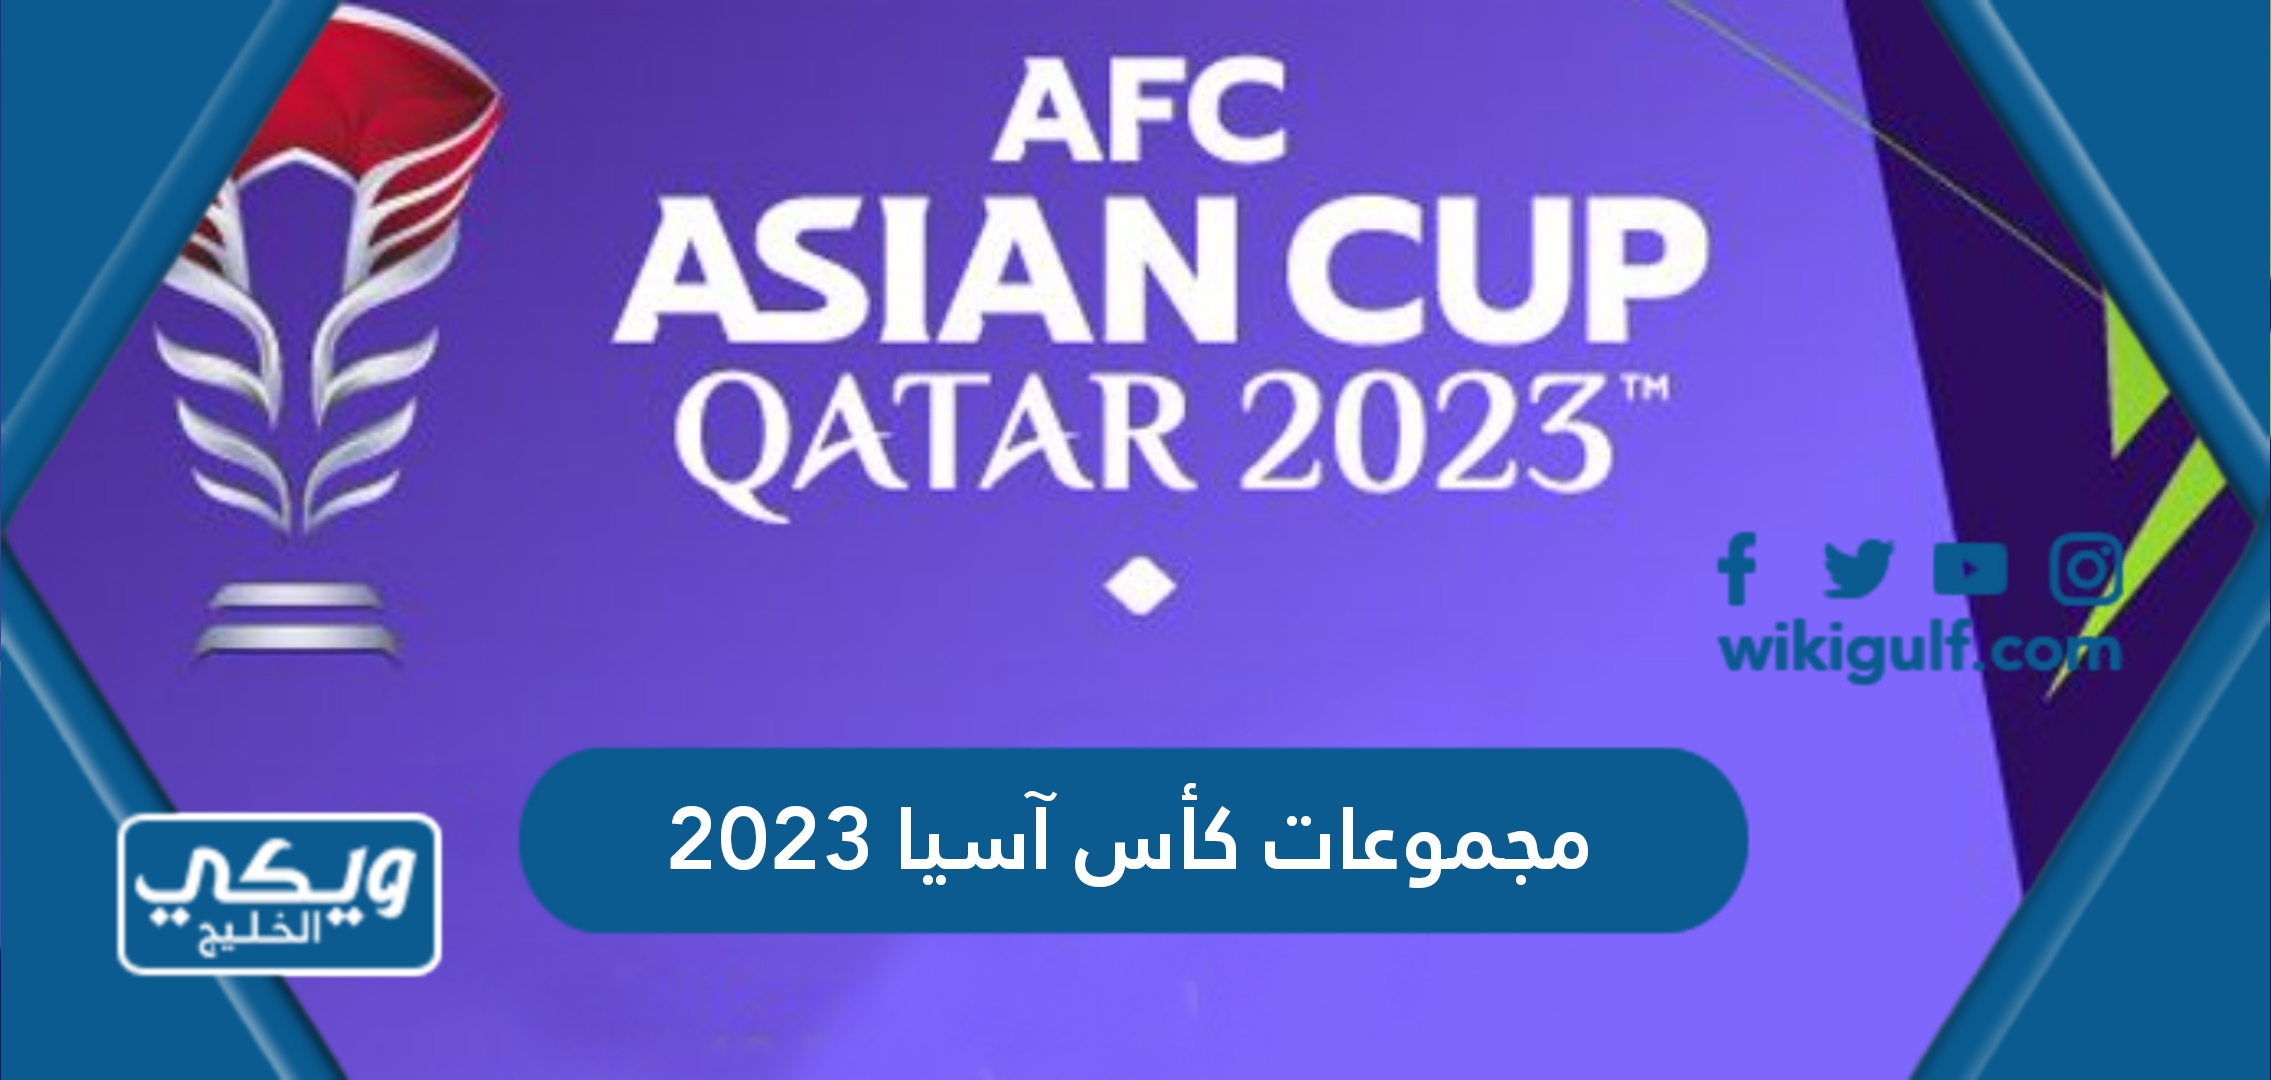 جدول مجموعات كأس آسيا 2023 قطر ومواعيد المباريات